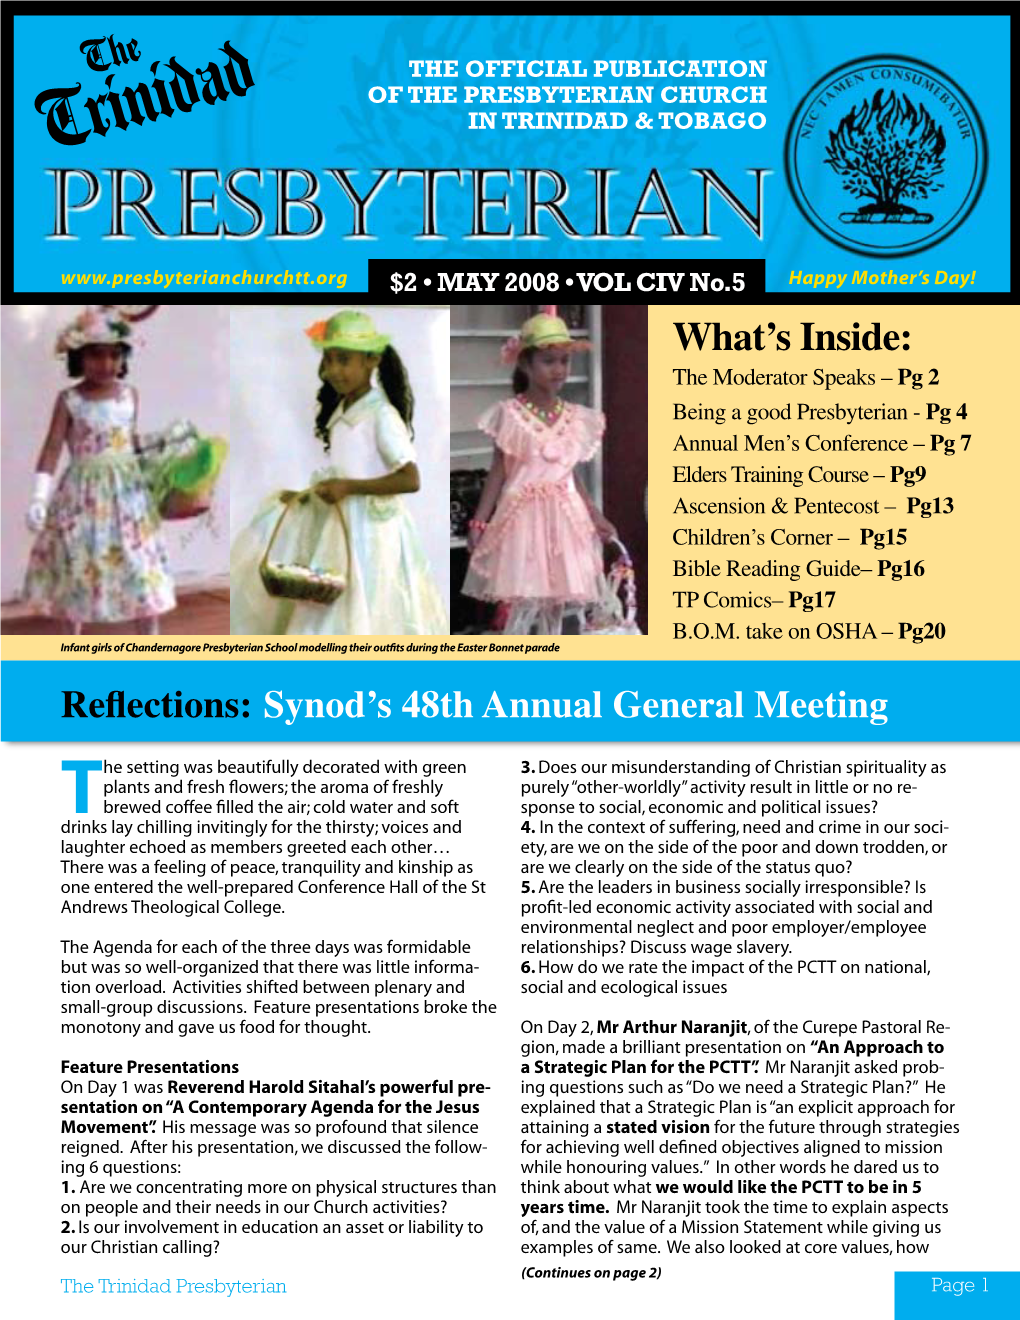 The Trinidad Presbyterian